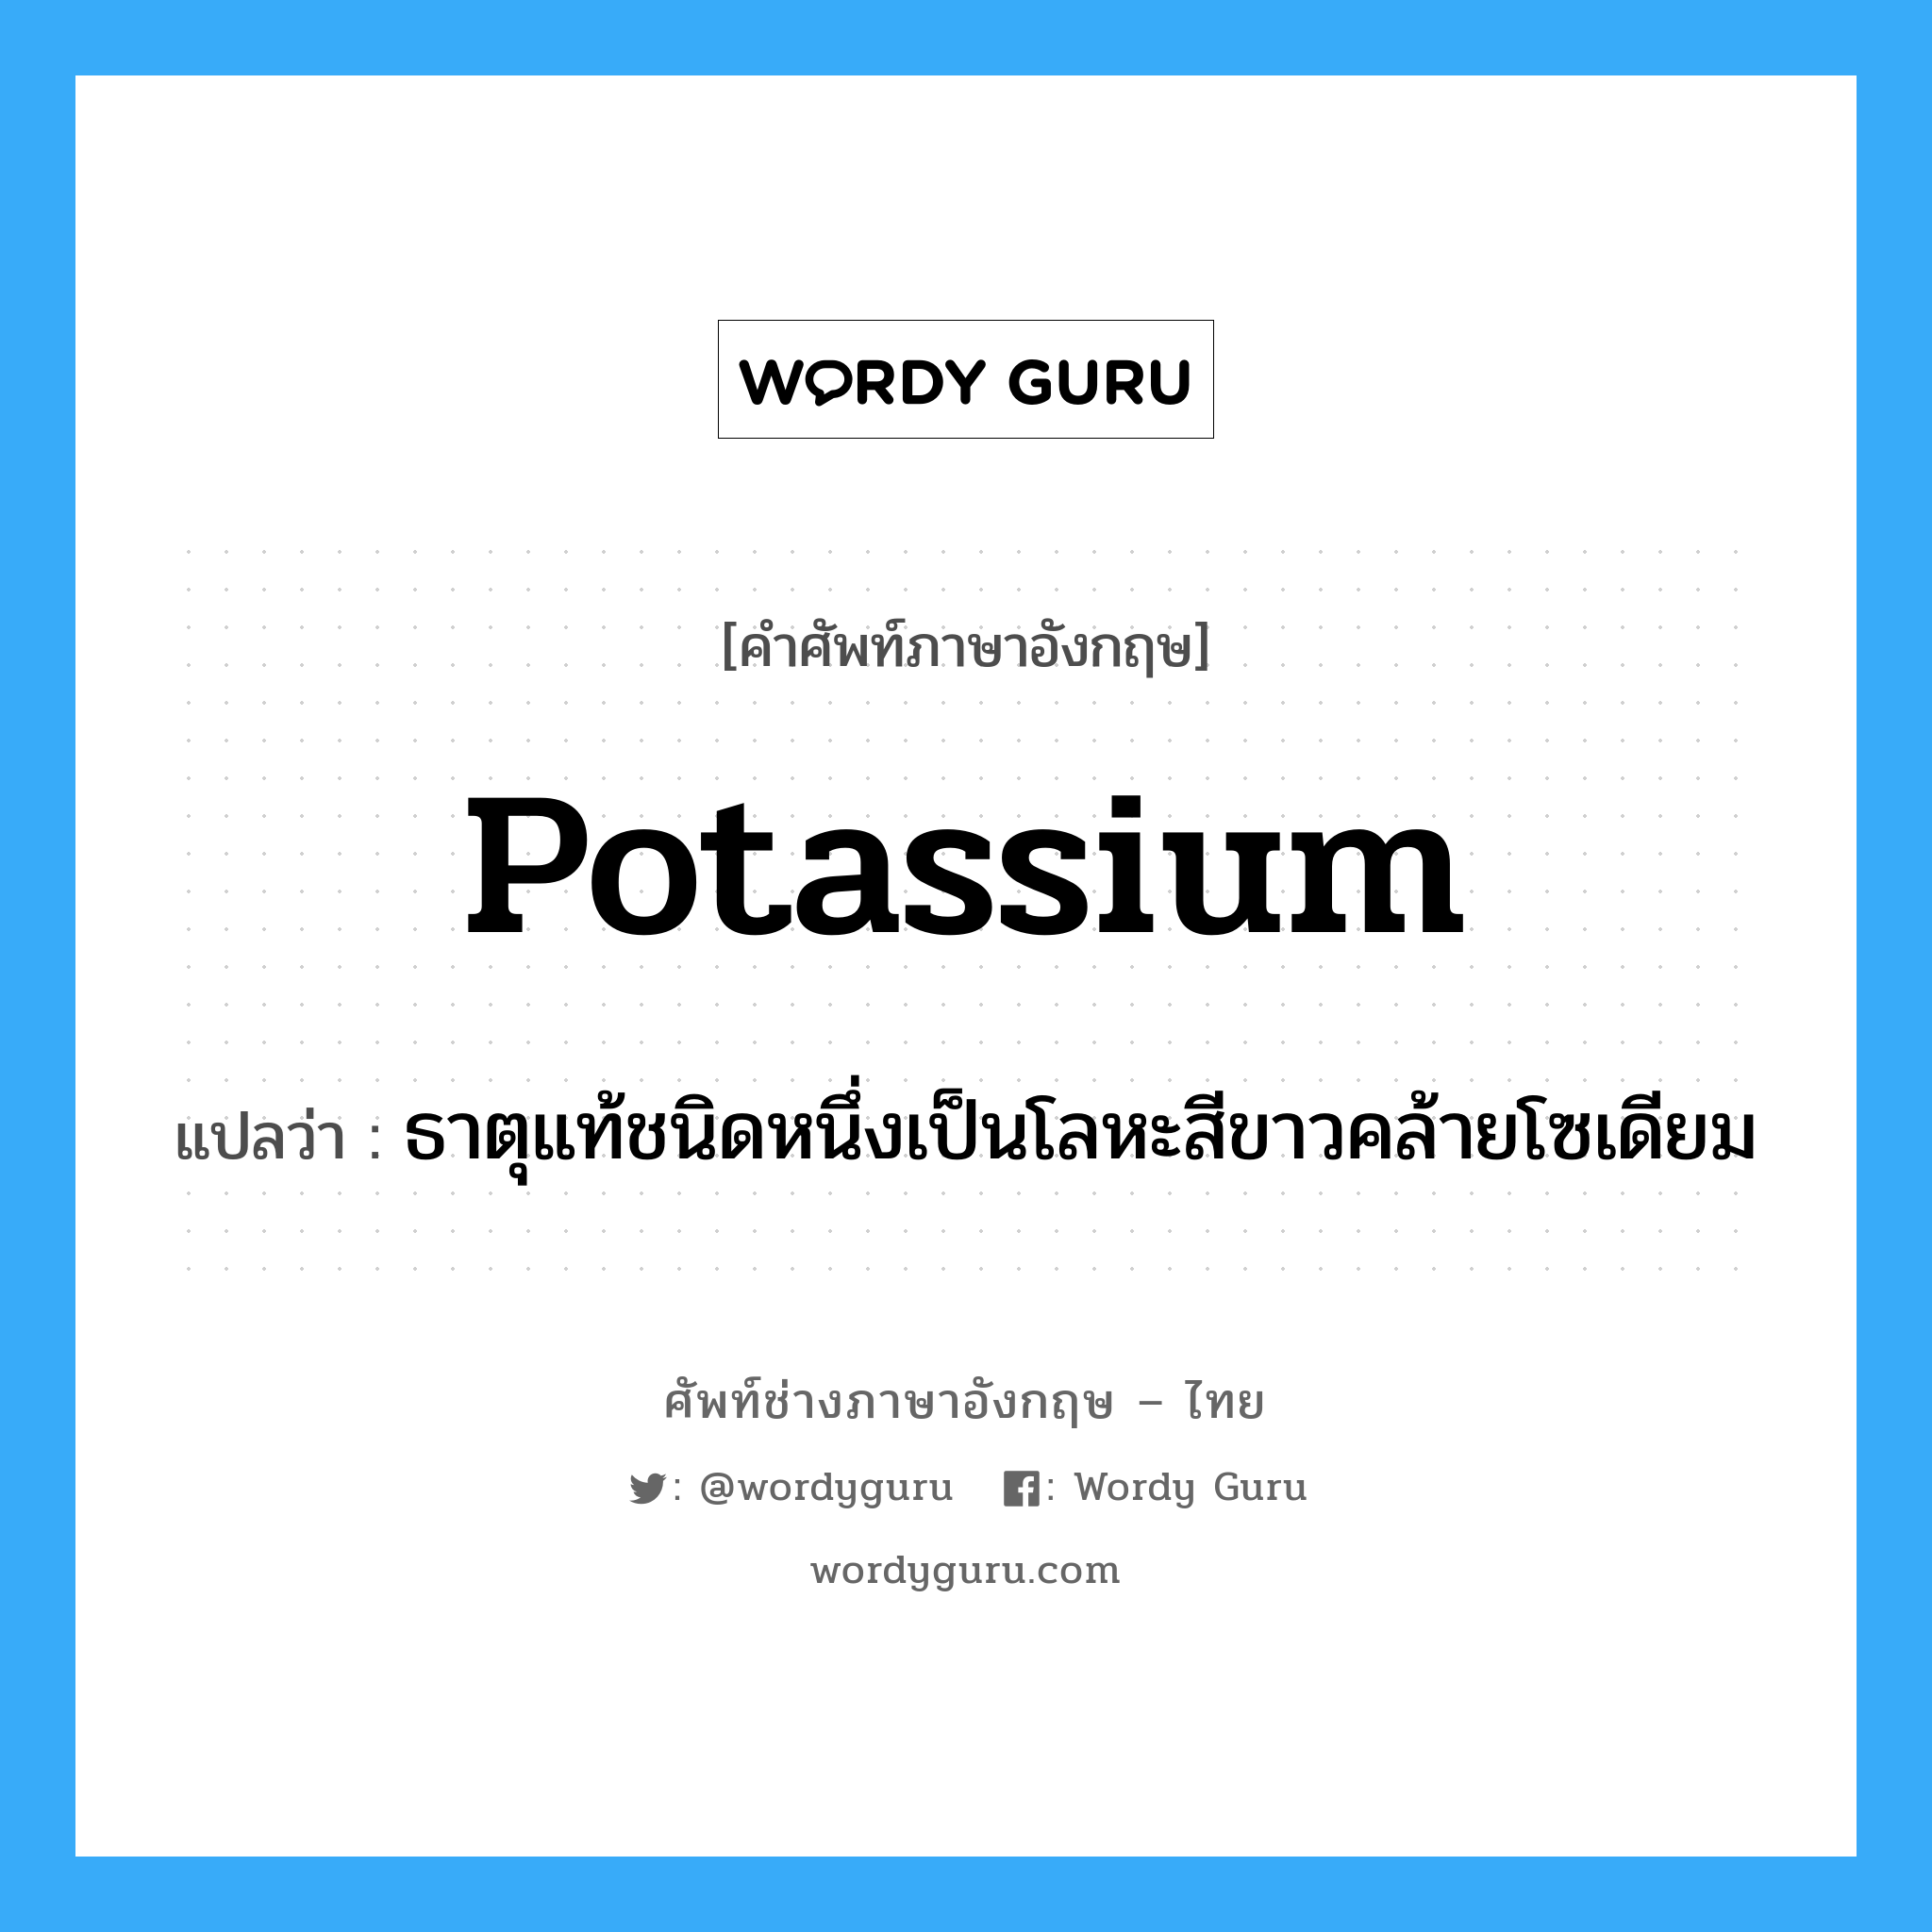 potassium แปลว่า?, คำศัพท์ช่างภาษาอังกฤษ - ไทย potassium คำศัพท์ภาษาอังกฤษ potassium แปลว่า ธาตุแท้ชนิดหนึ่งเป็นโลหะสีขาวคล้ายโซเดียม